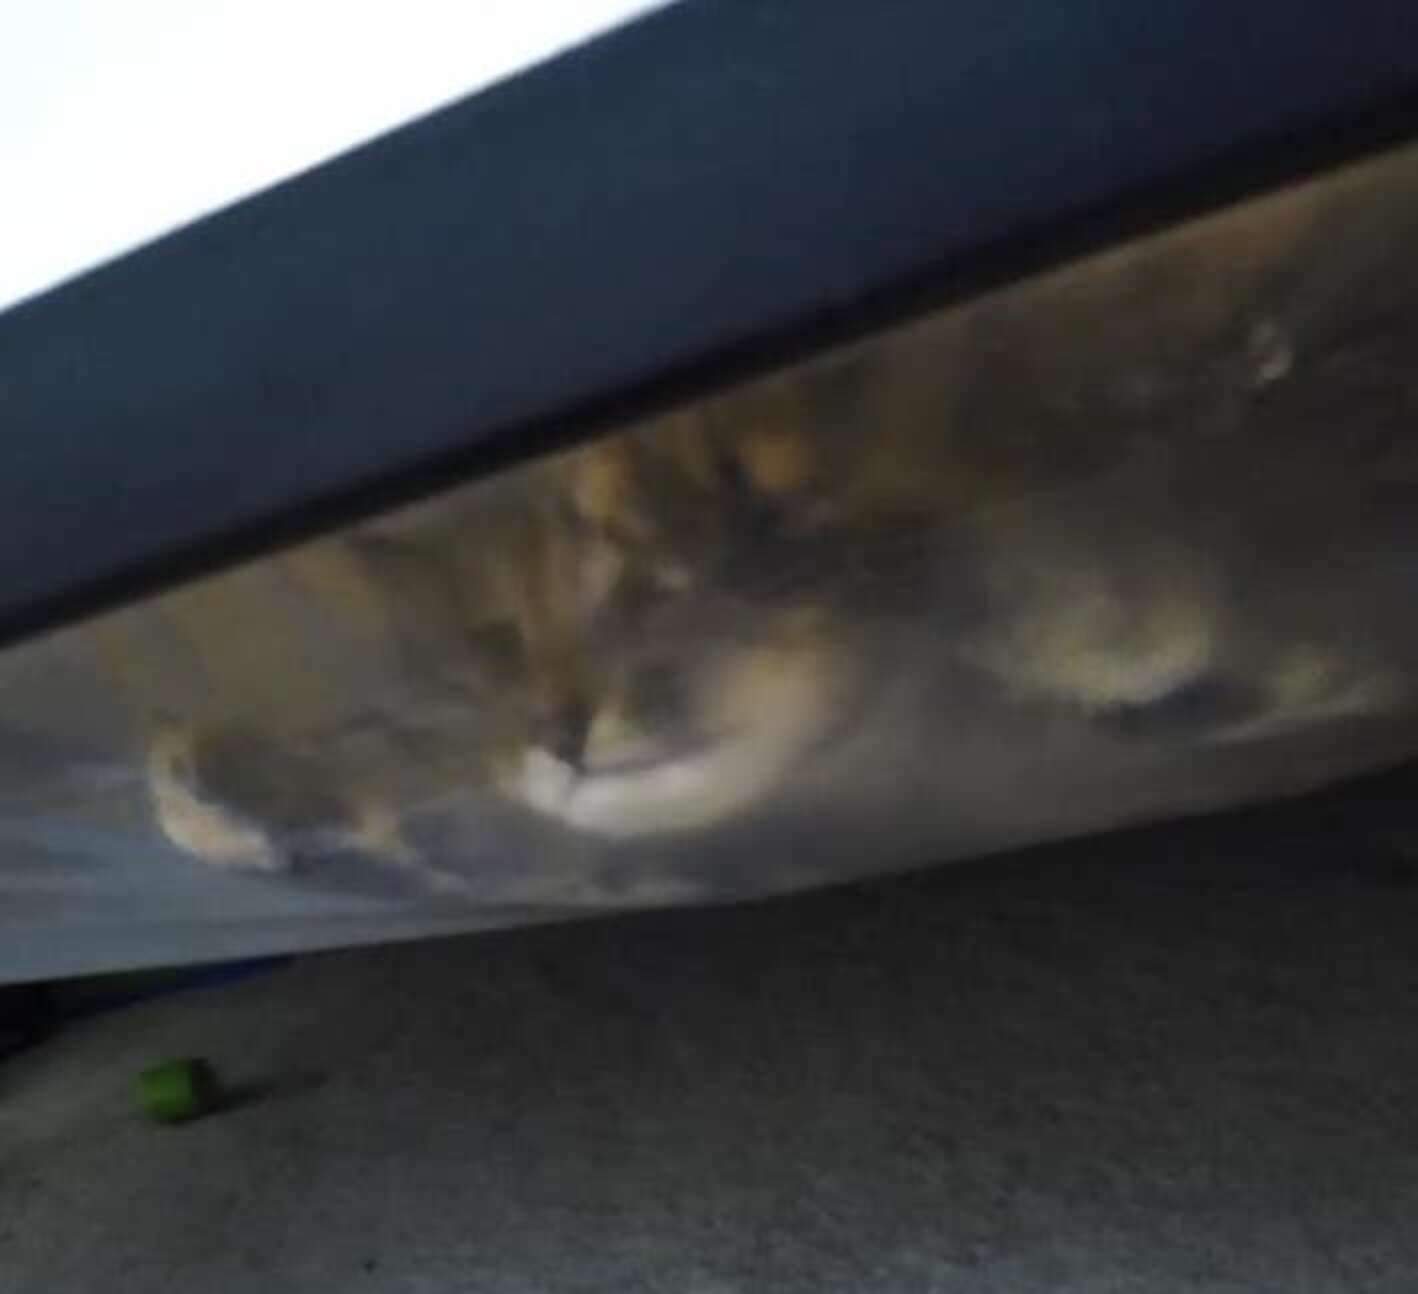 Монстр під ліжком виявився кошеням